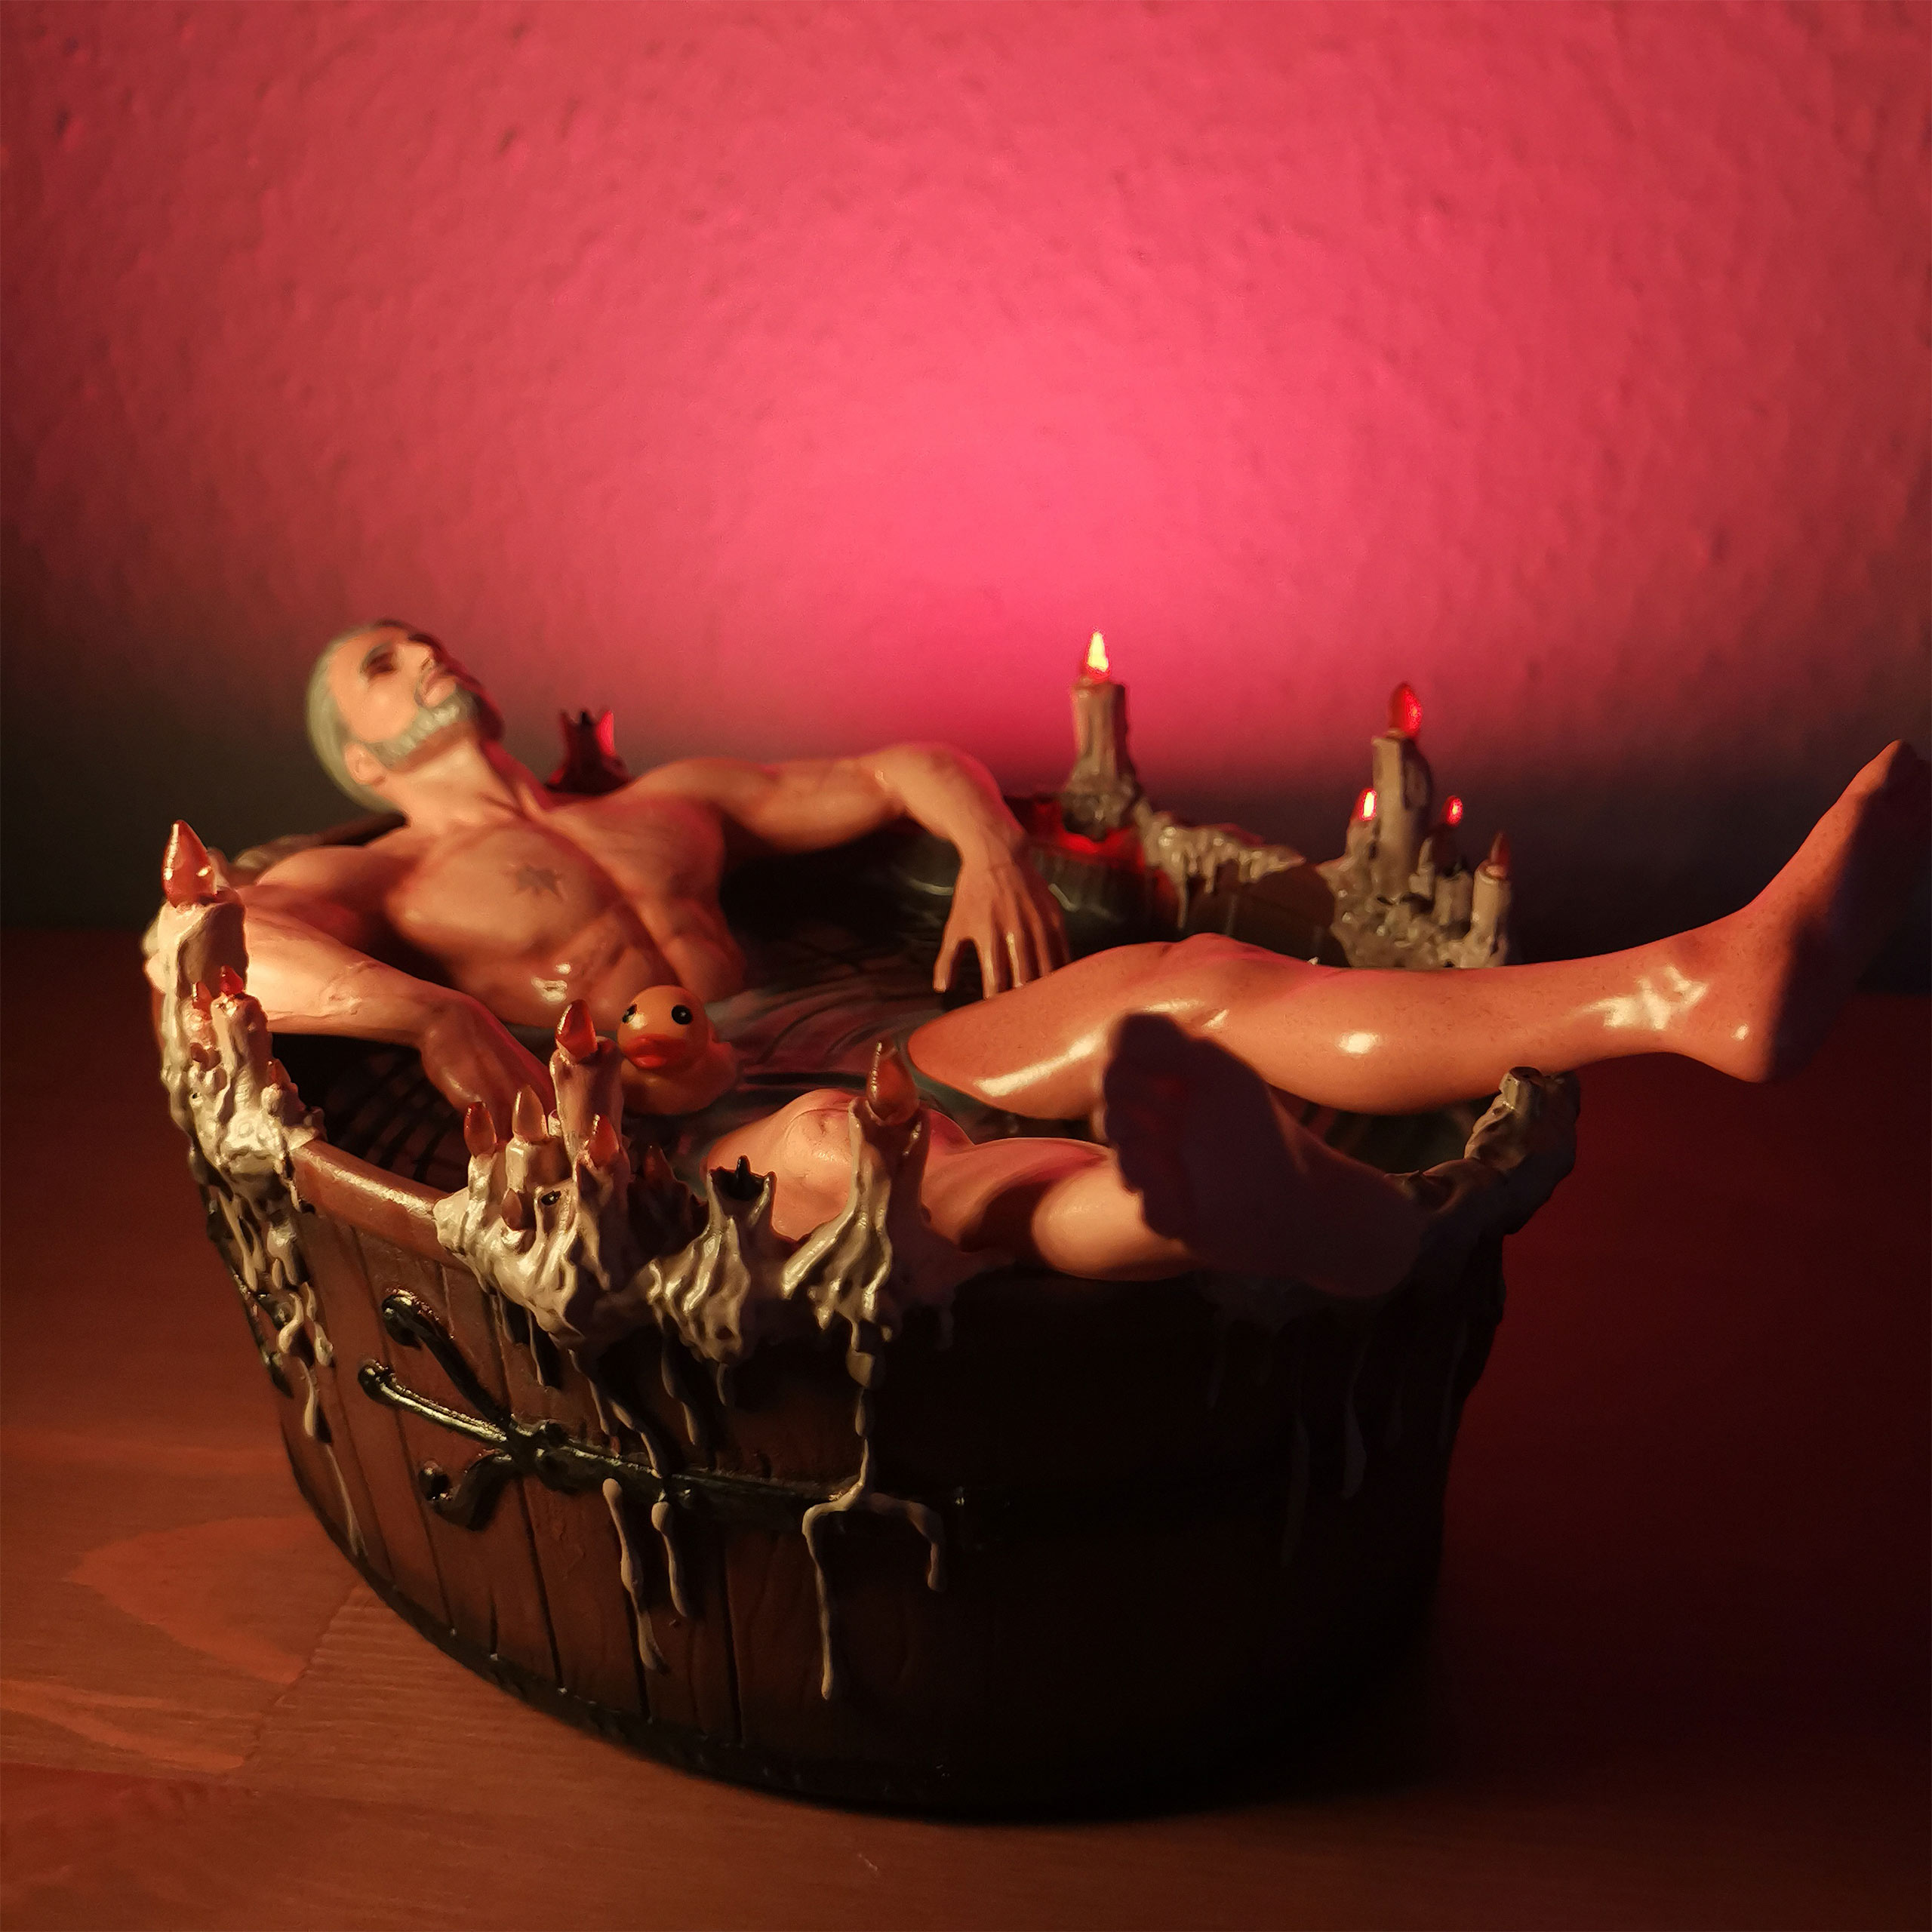 Witcher - Geralt of Rivia in Bathtub Statue